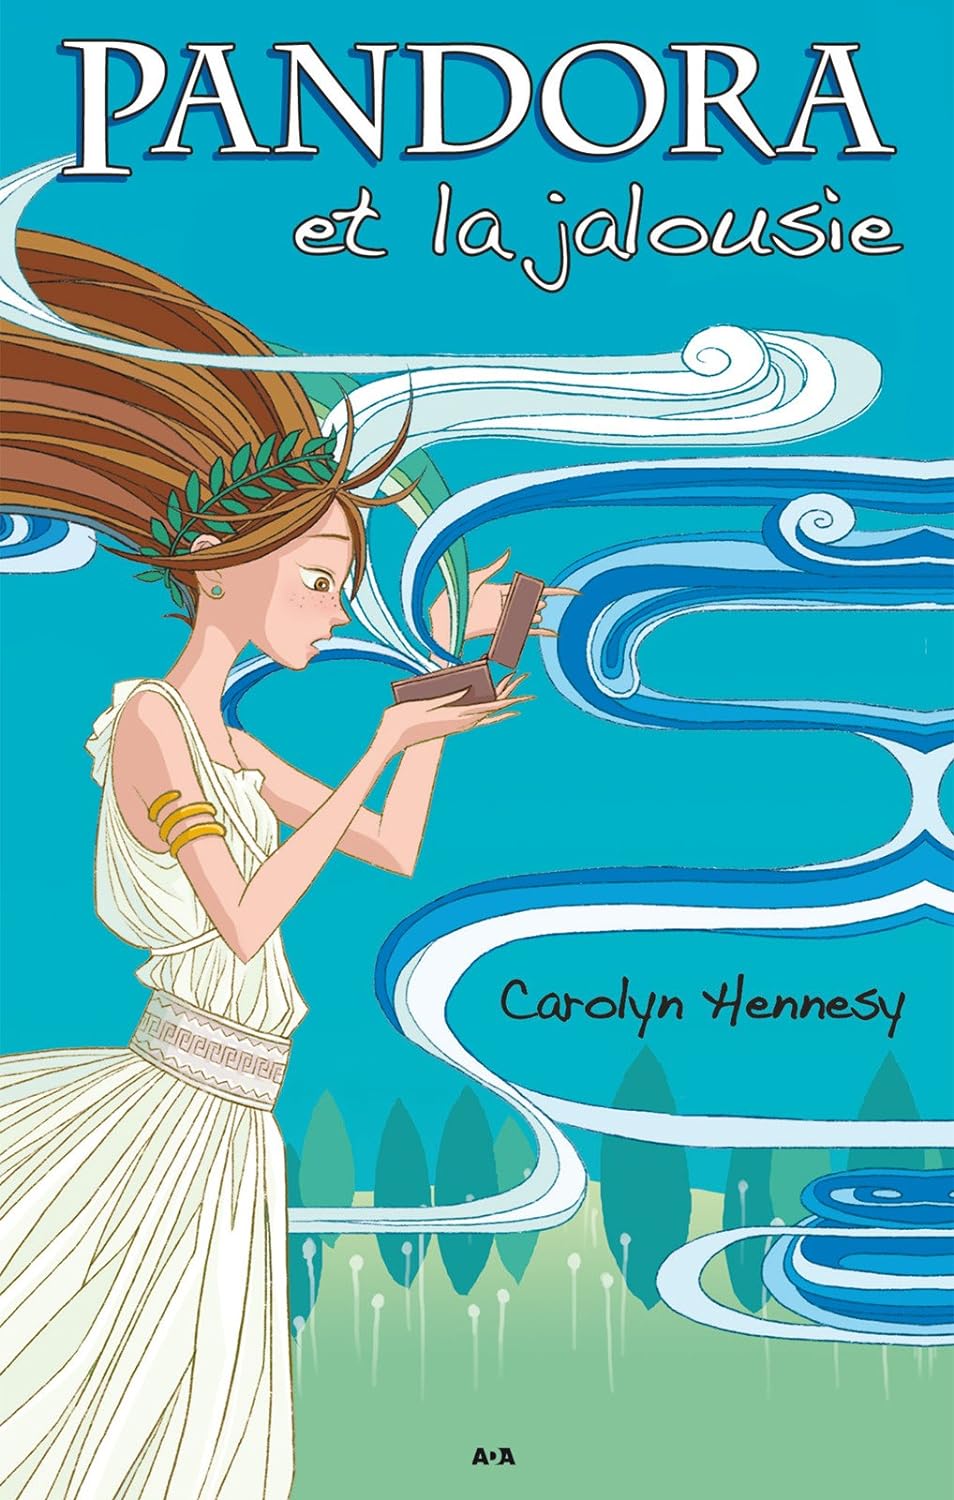 Pandora et la jalousie # 1 - Carolyn Hennesy